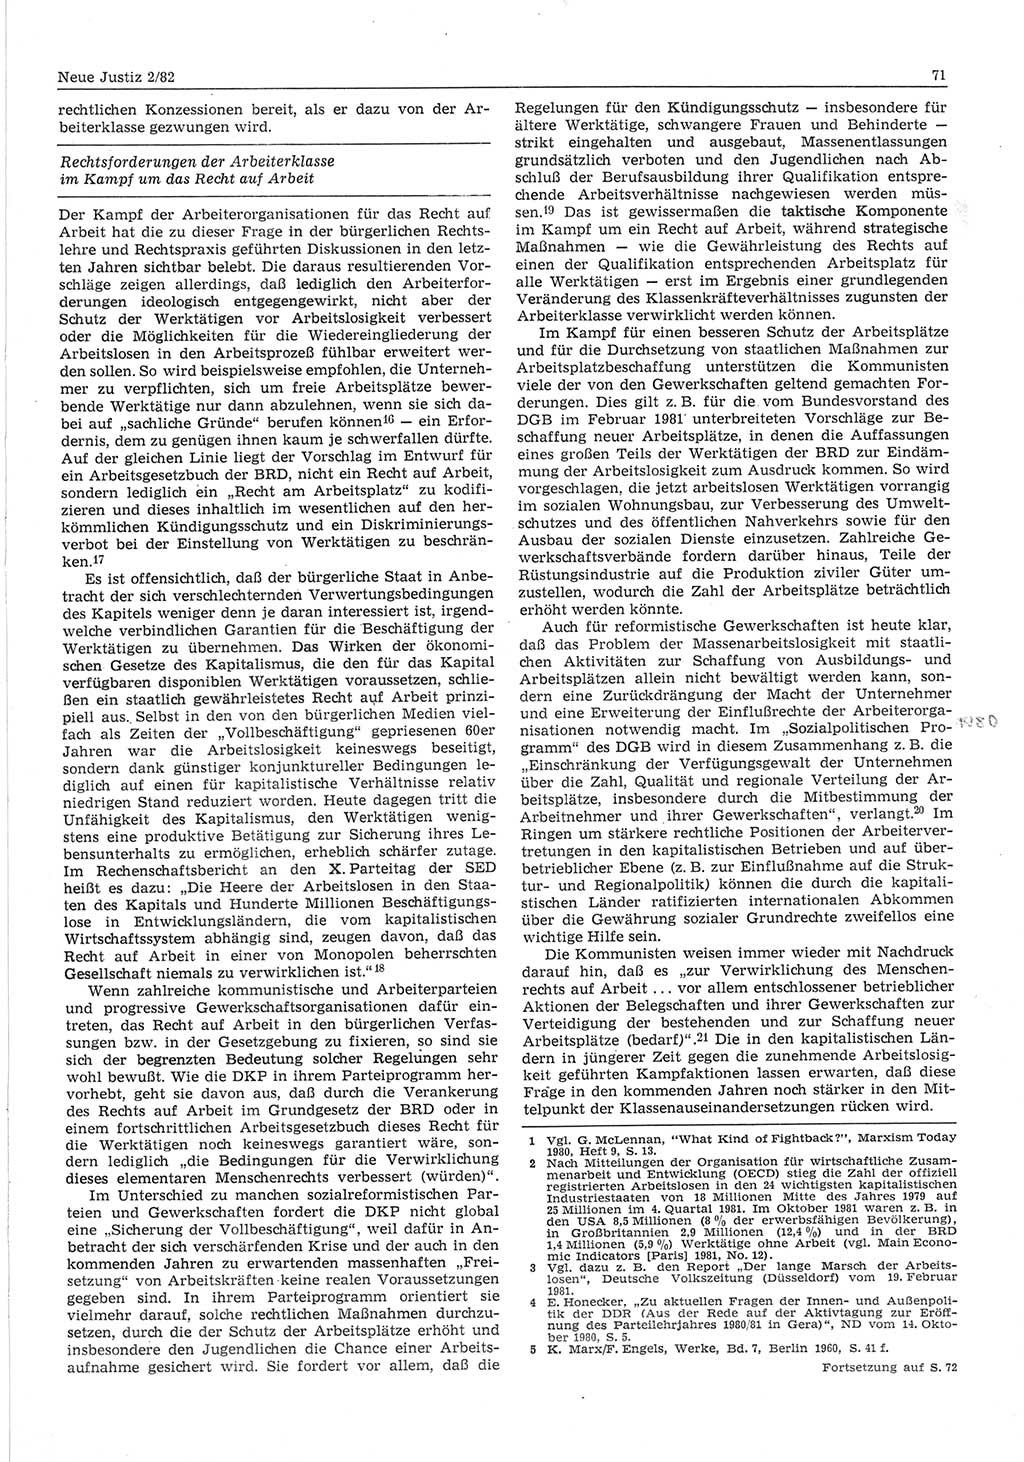 Neue Justiz (NJ), Zeitschrift für sozialistisches Recht und Gesetzlichkeit [Deutsche Demokratische Republik (DDR)], 36. Jahrgang 1982, Seite 71 (NJ DDR 1982, S. 71)